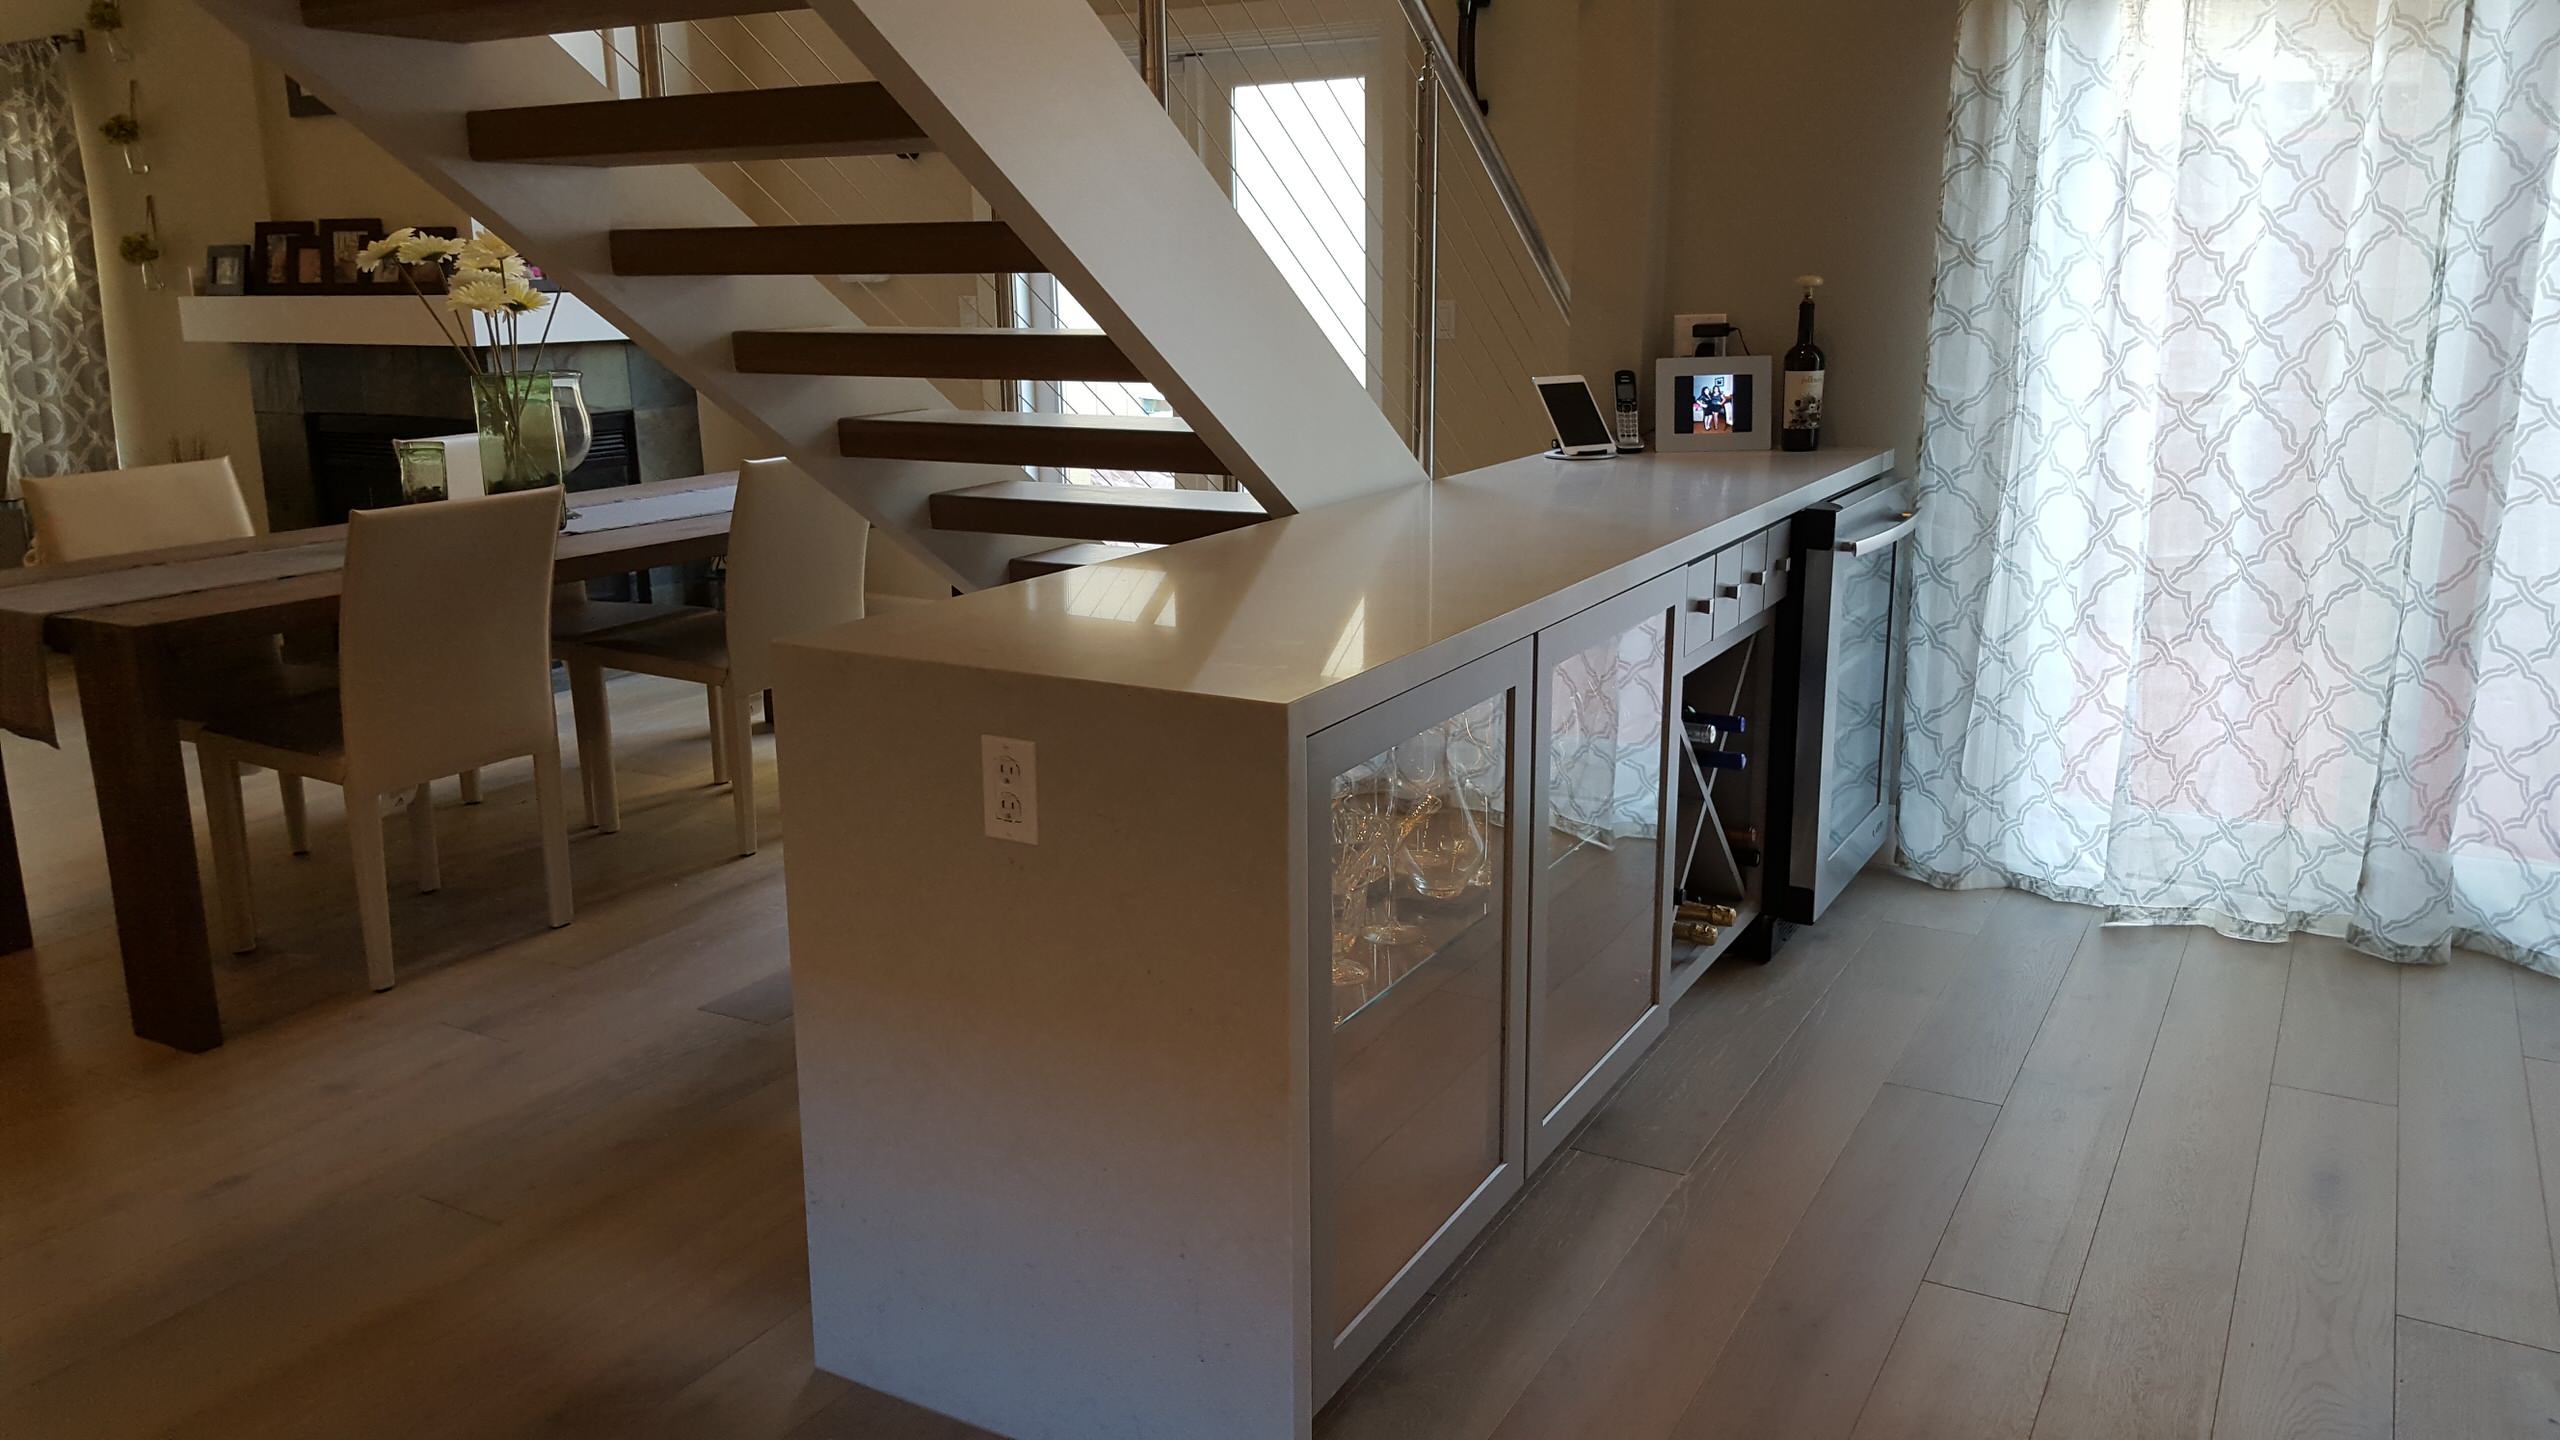 Open modern kitchen